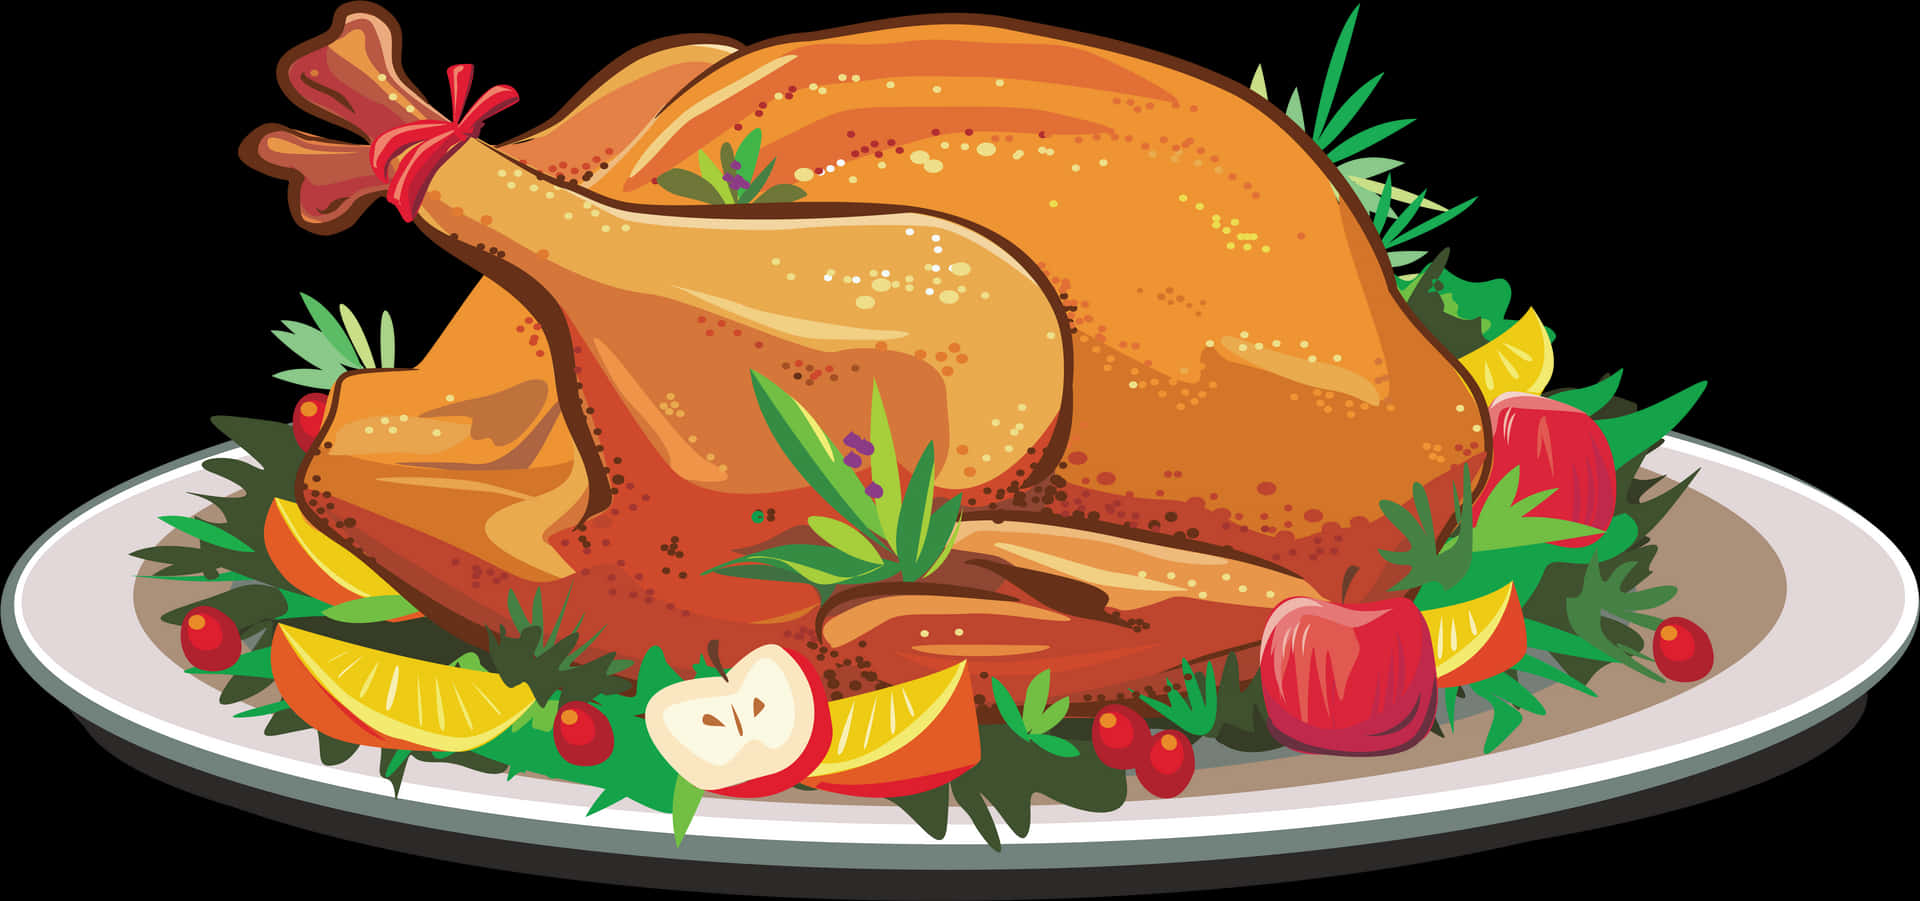 Roasted Turkey Dish Illustration PNG image